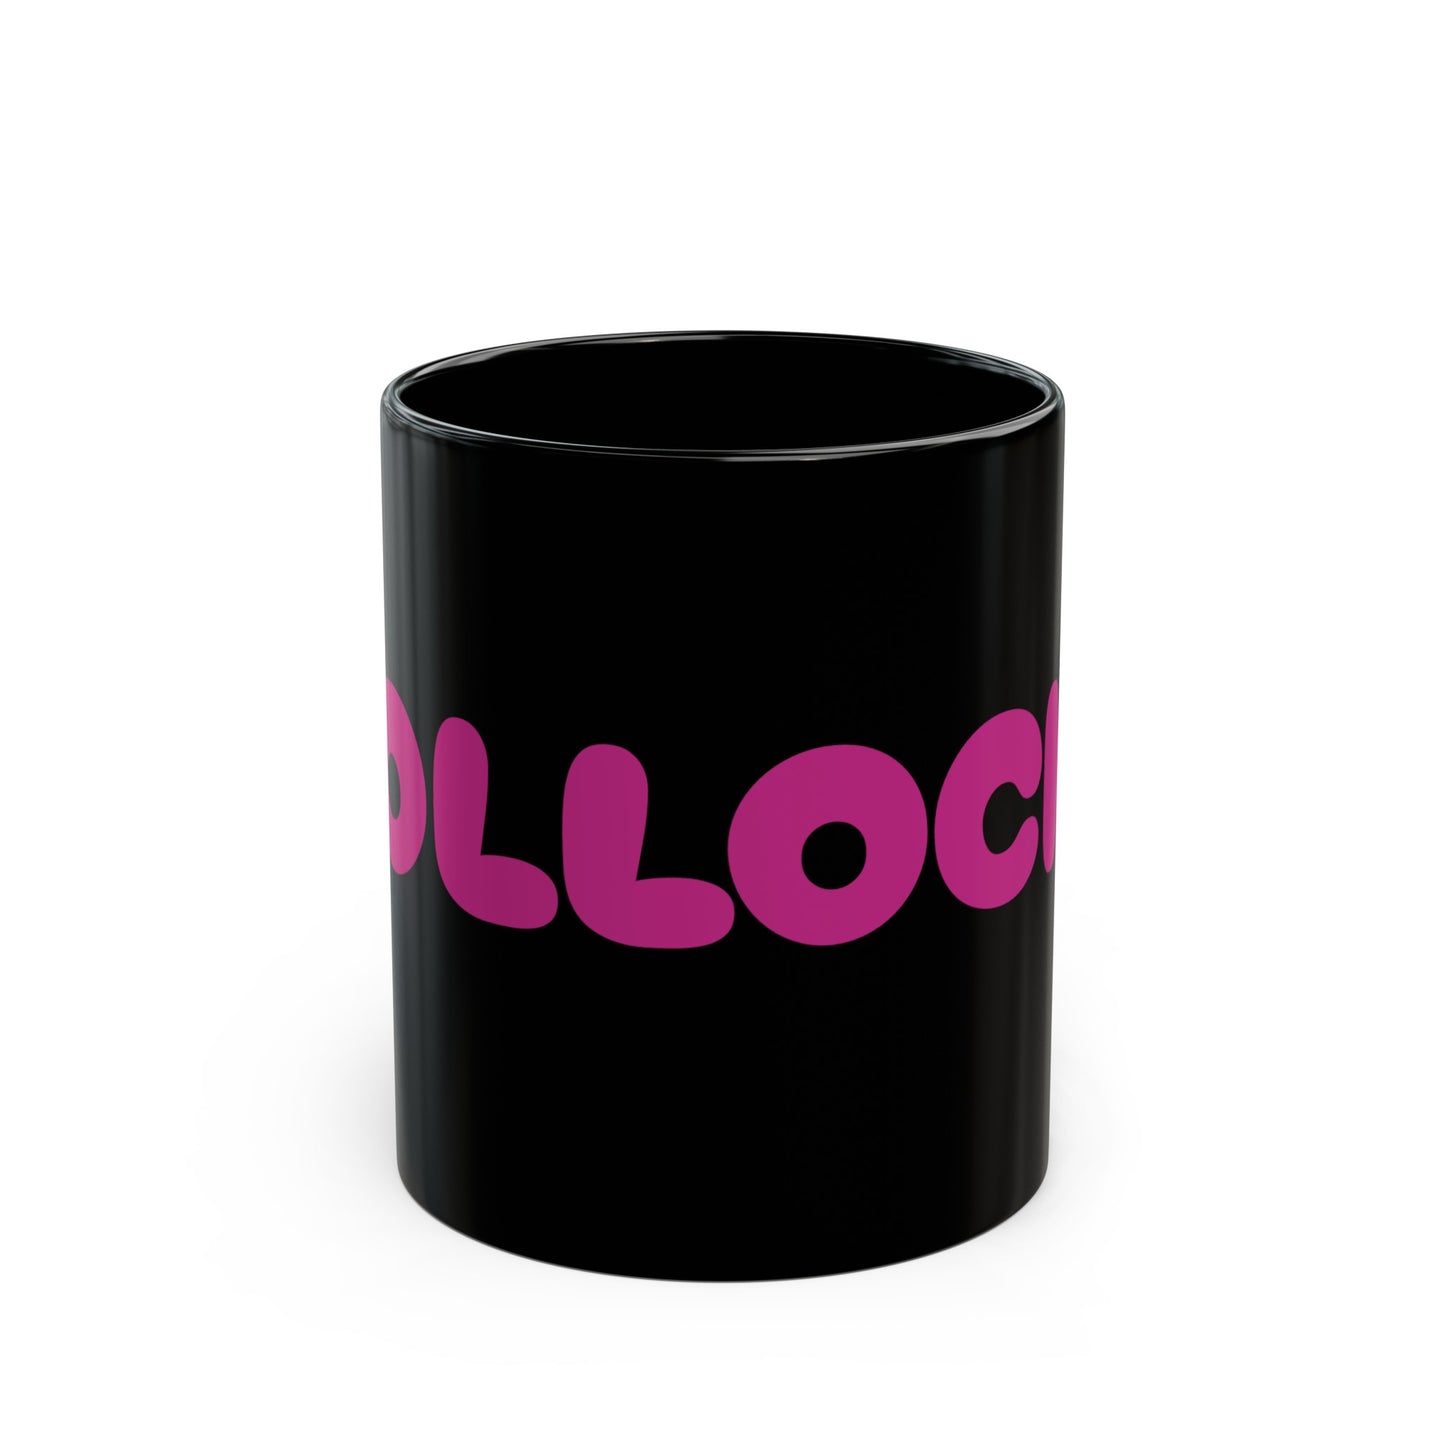 BOLLOCKS - Black Mug (11oz)